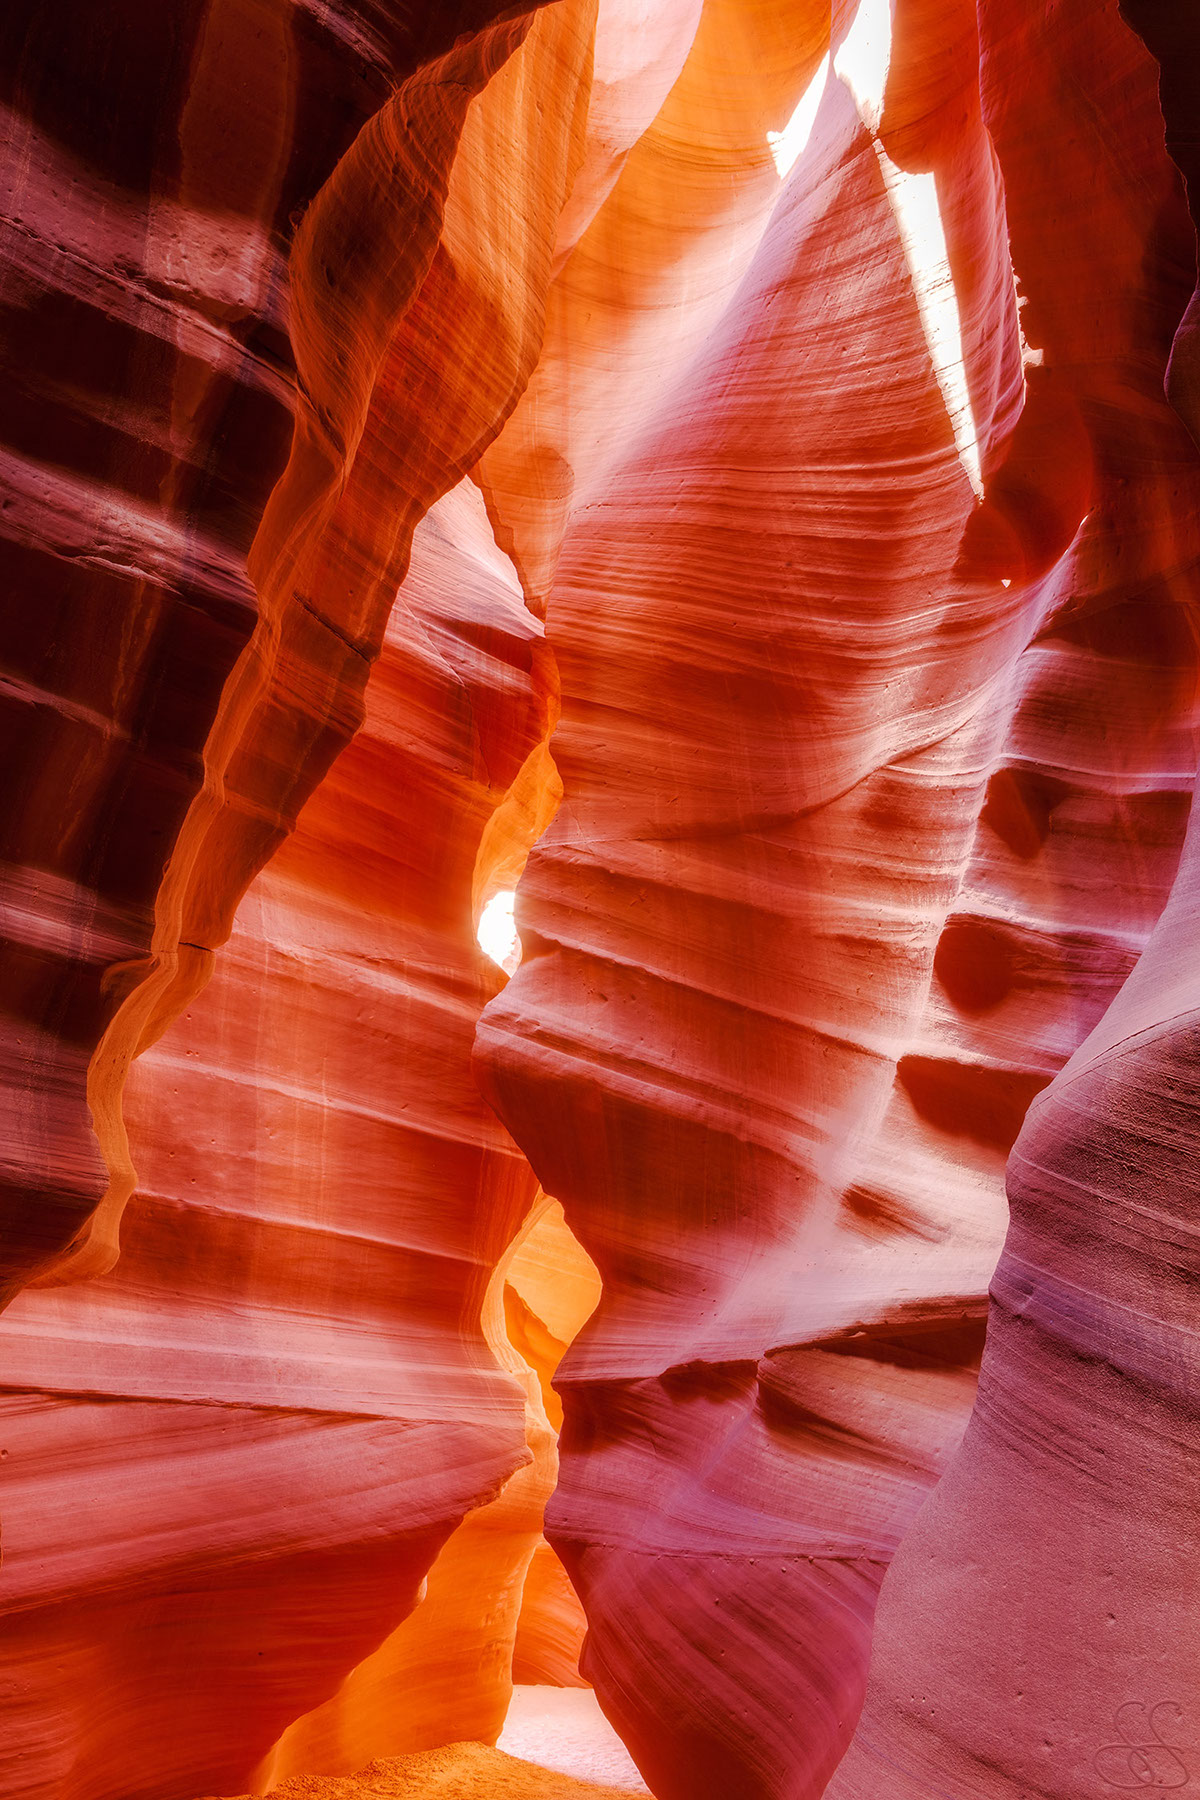 Adobe Portfolio arizona antelope canyon southwest usa united states Landscape Travel Photography 